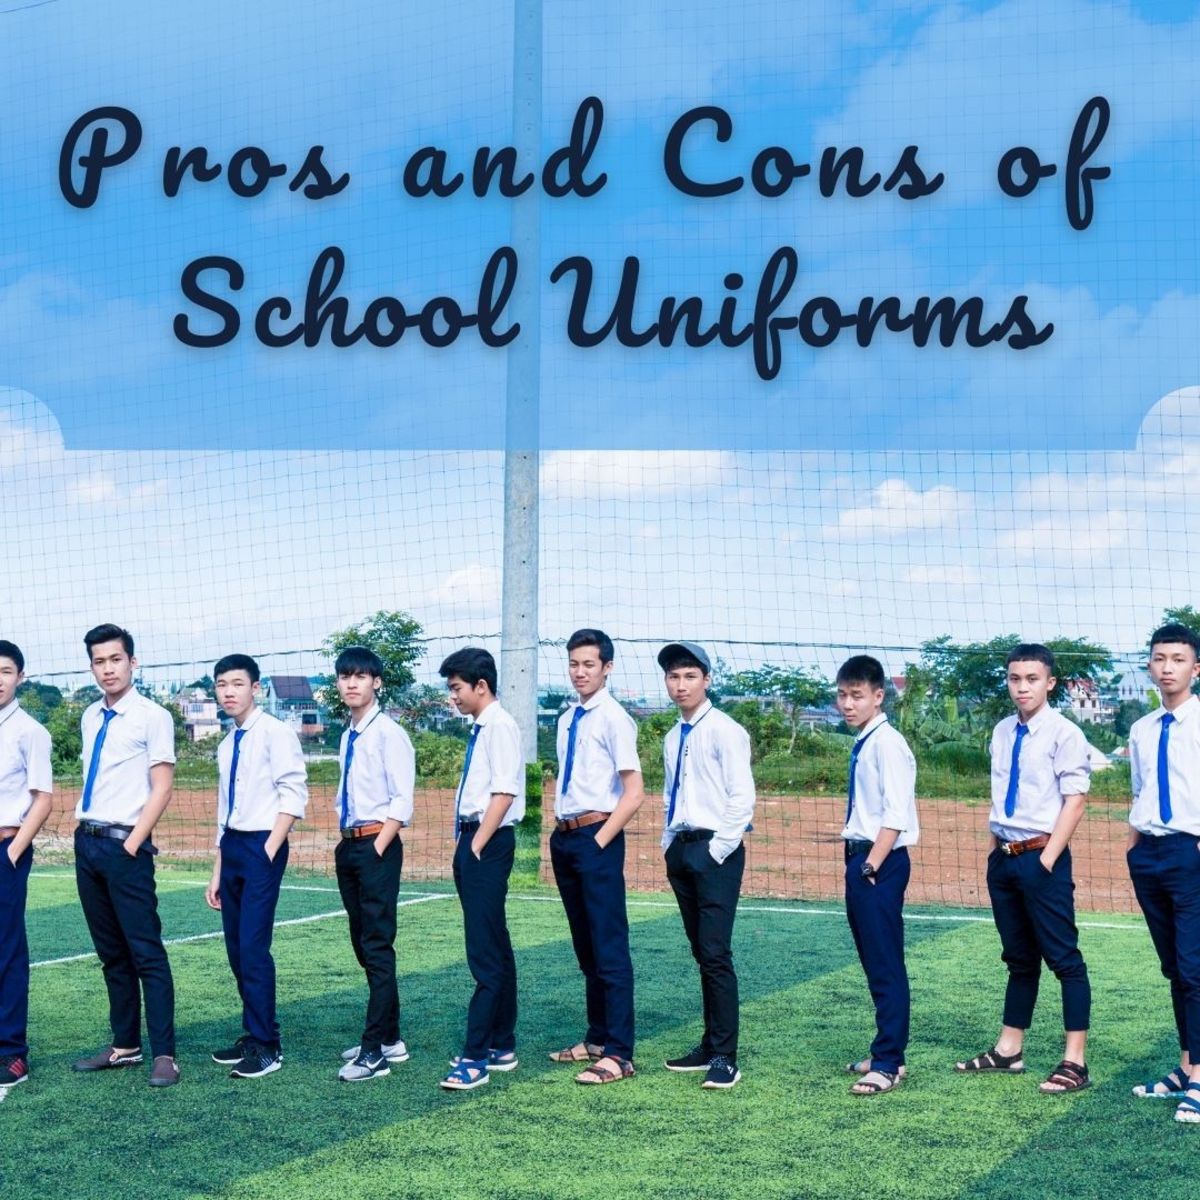 School Uniforms Debate: Pros and Cons